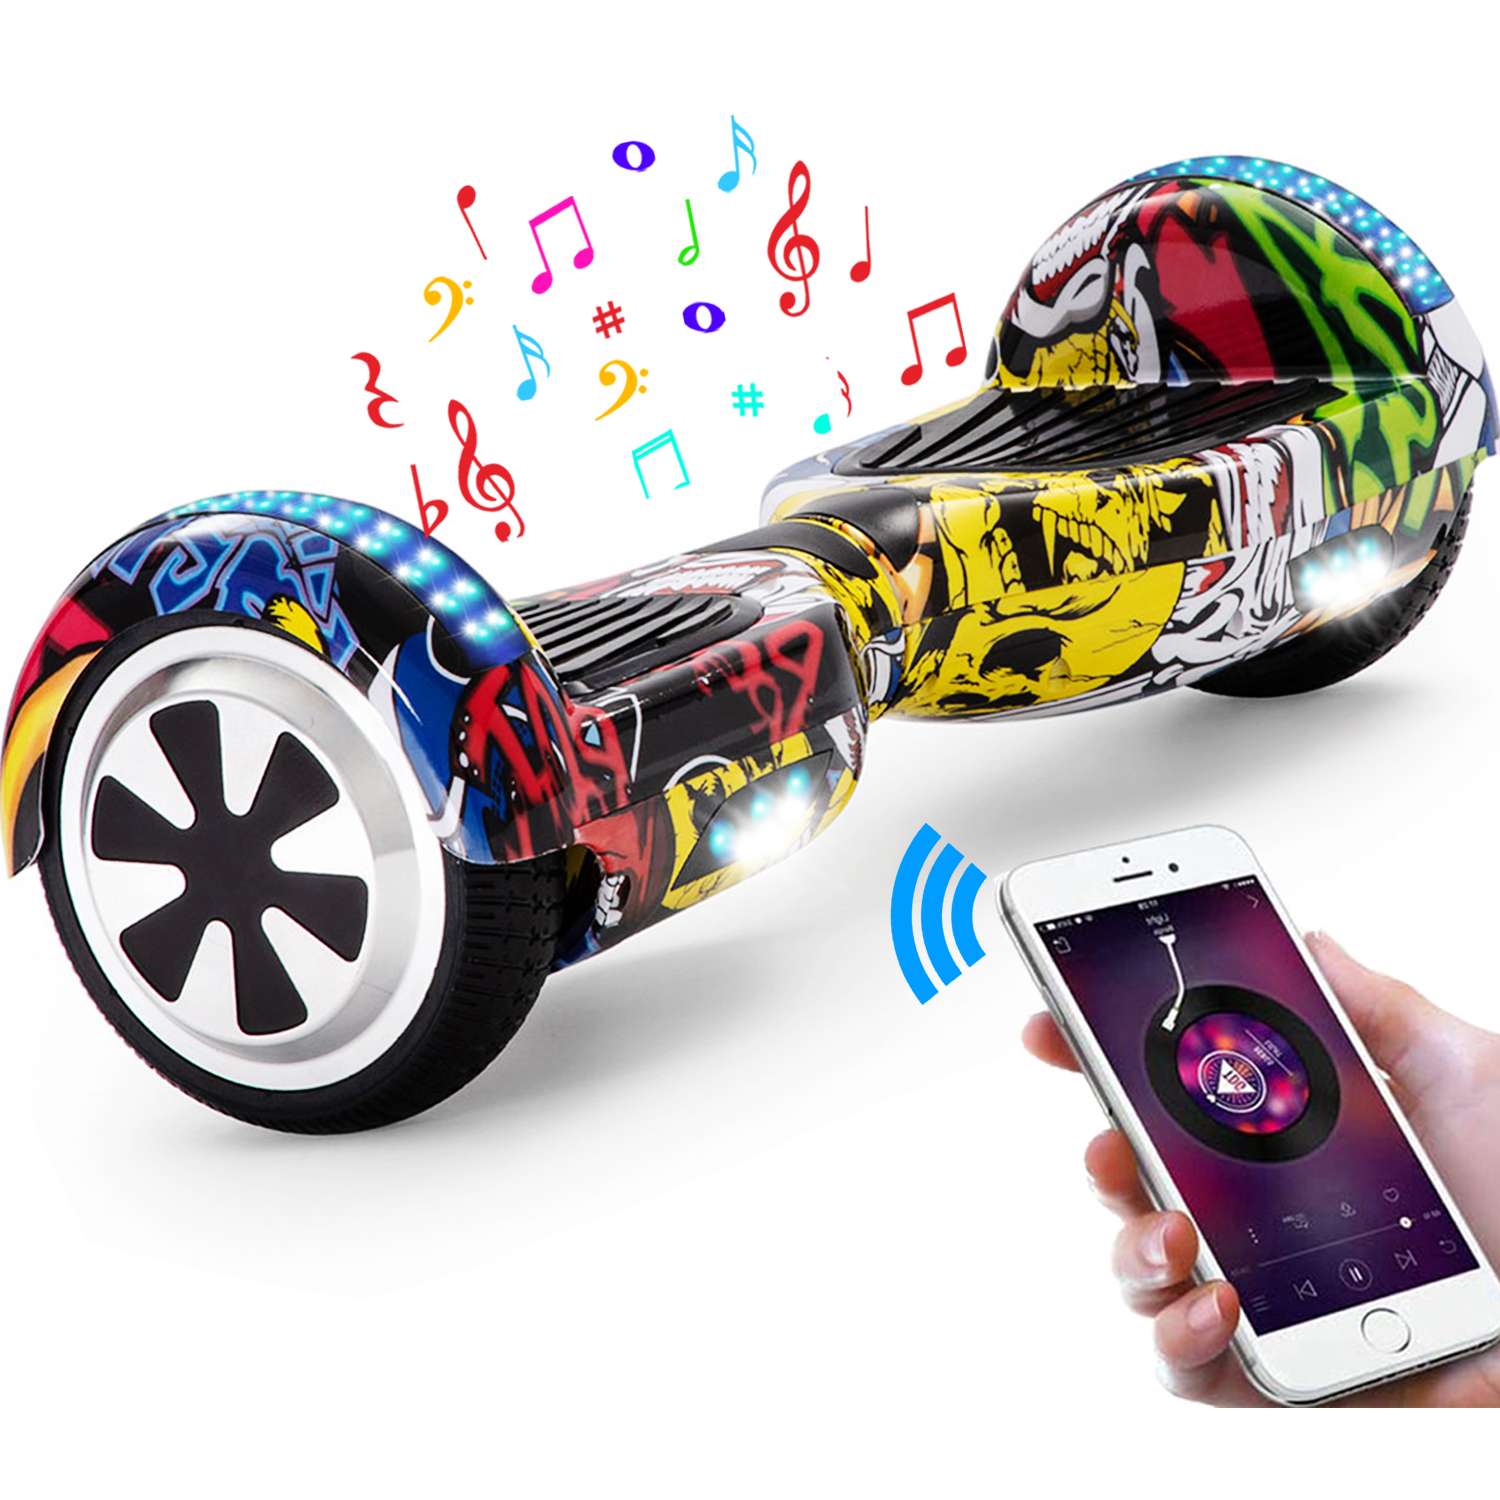 Neues 6,5" Hip Hop Graffiti Hoverboard gelb mit Bluetooth Musik Lautsprecher und LED Licht - 500W 12km/h